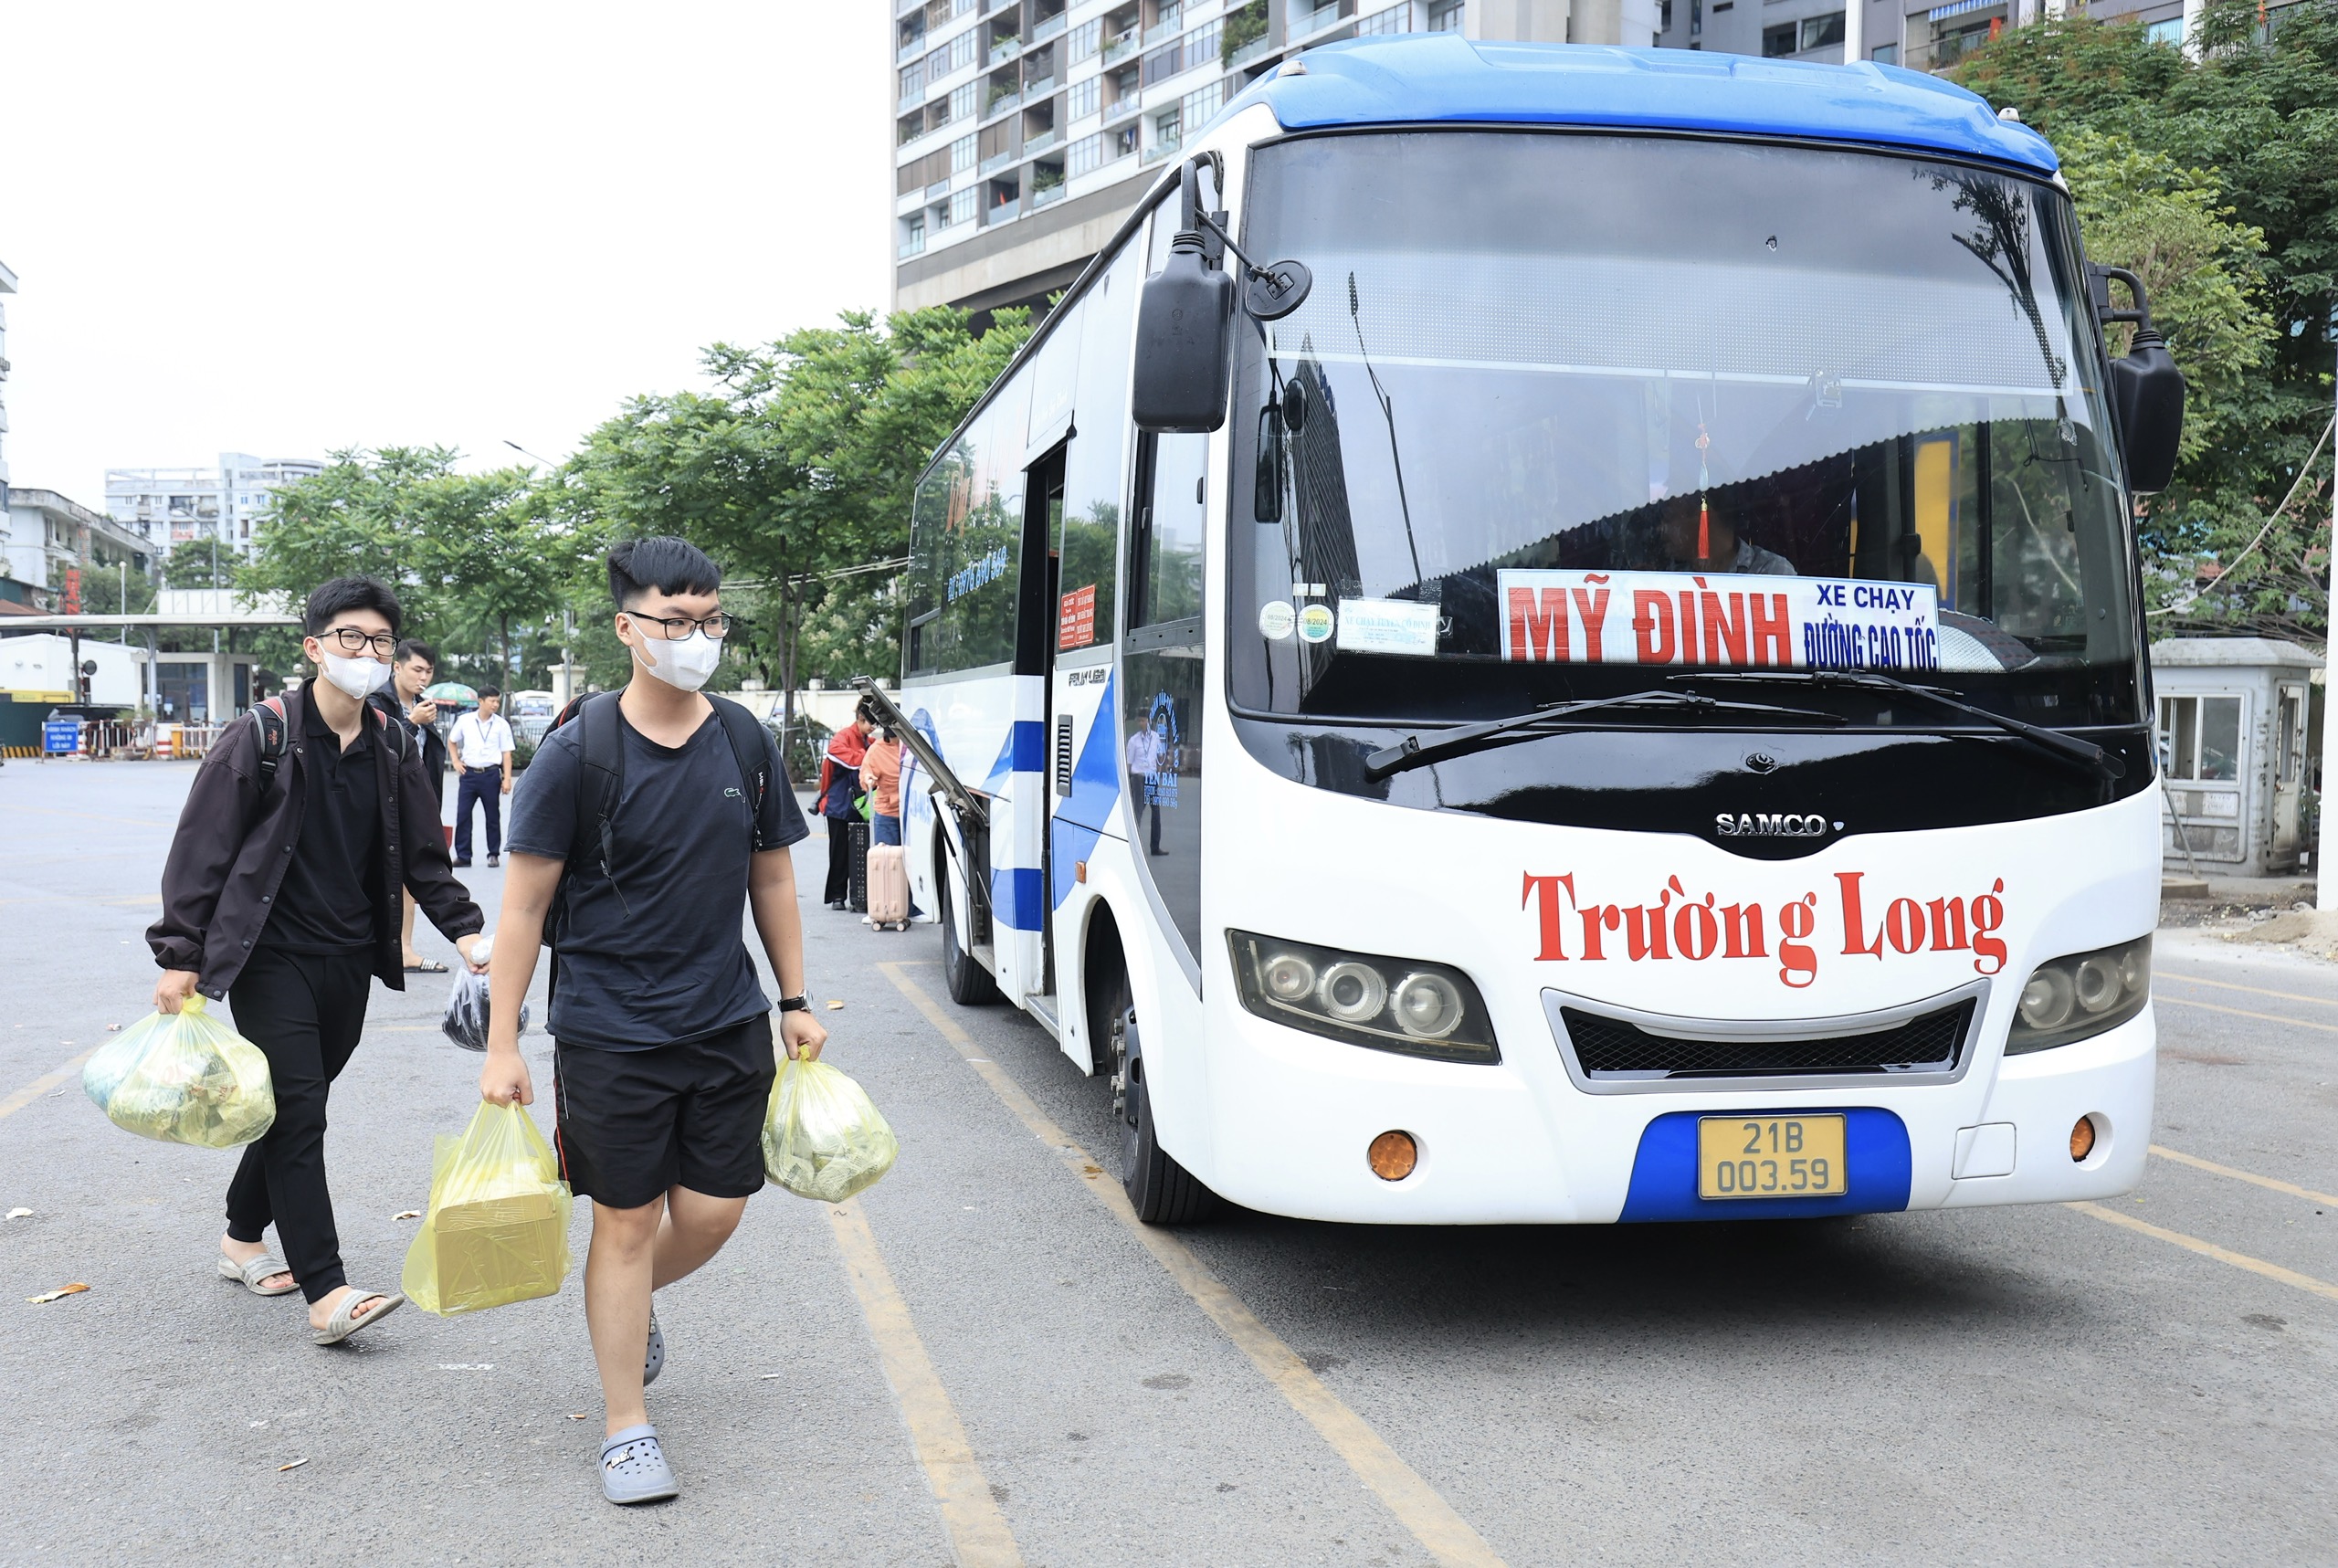 Cả vạn người quay lại Hà Nội ngày cuối nghỉ lễ, xe khách dồn dập về bến- Ảnh 2.